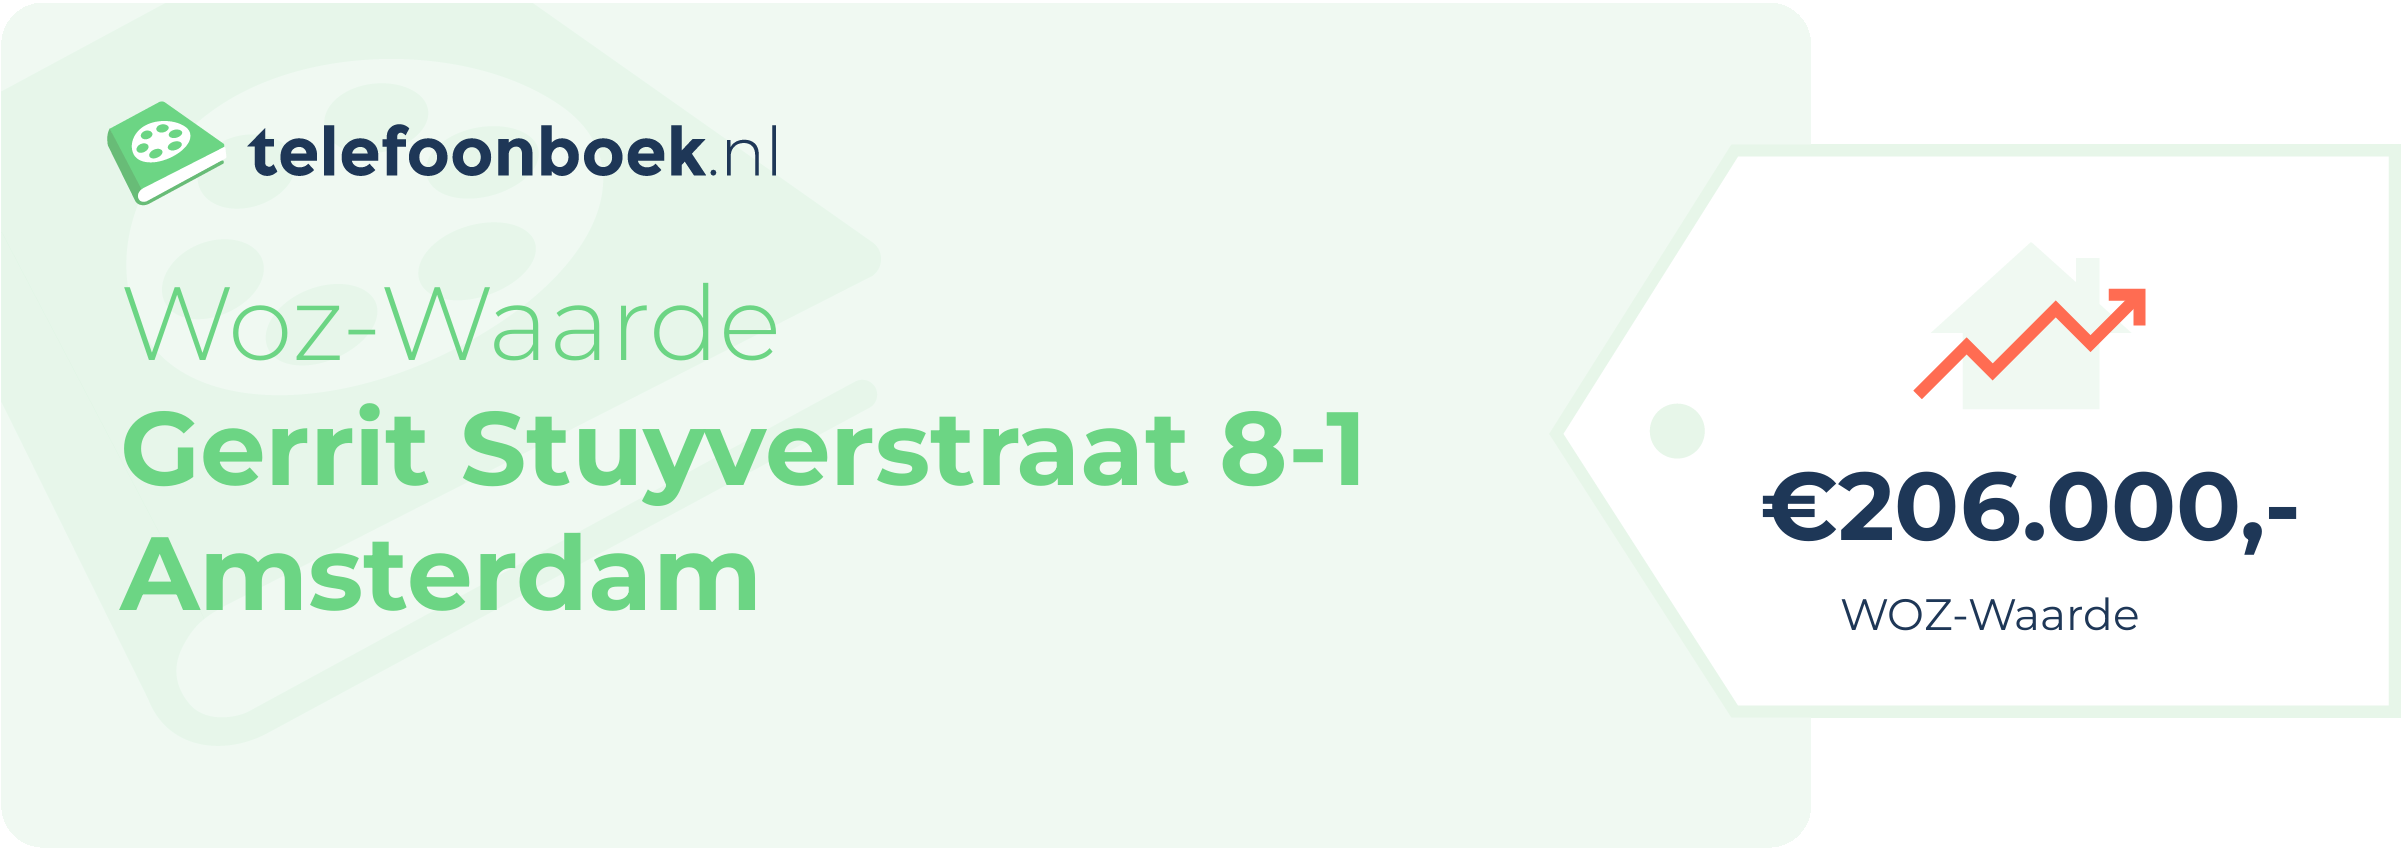 WOZ-waarde Gerrit Stuyverstraat 8-1 Amsterdam